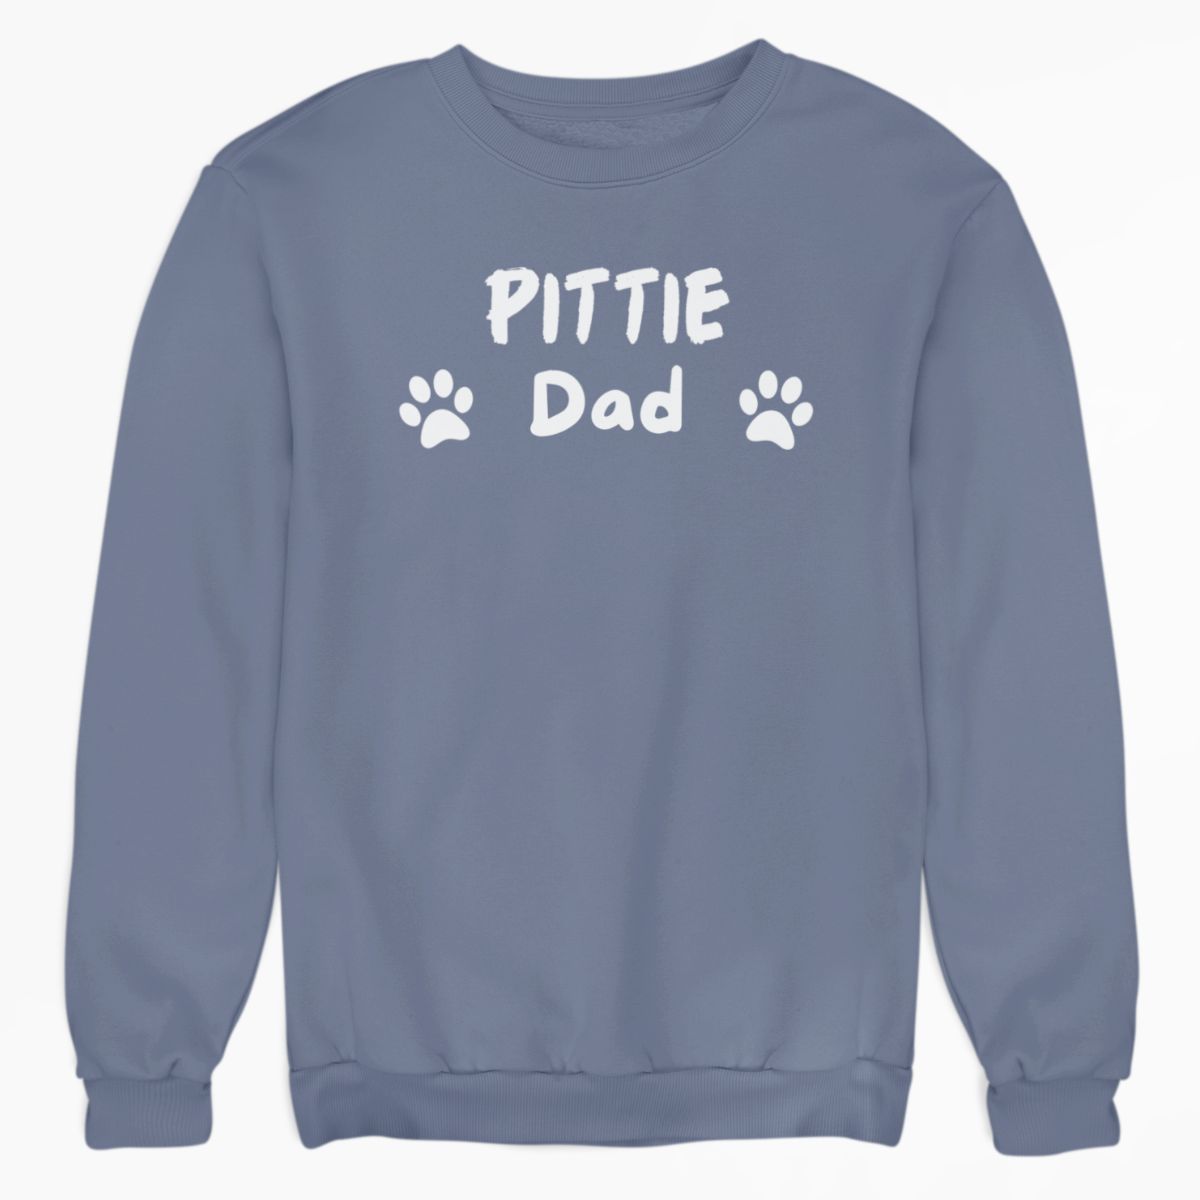 Pittie Dad Shirt